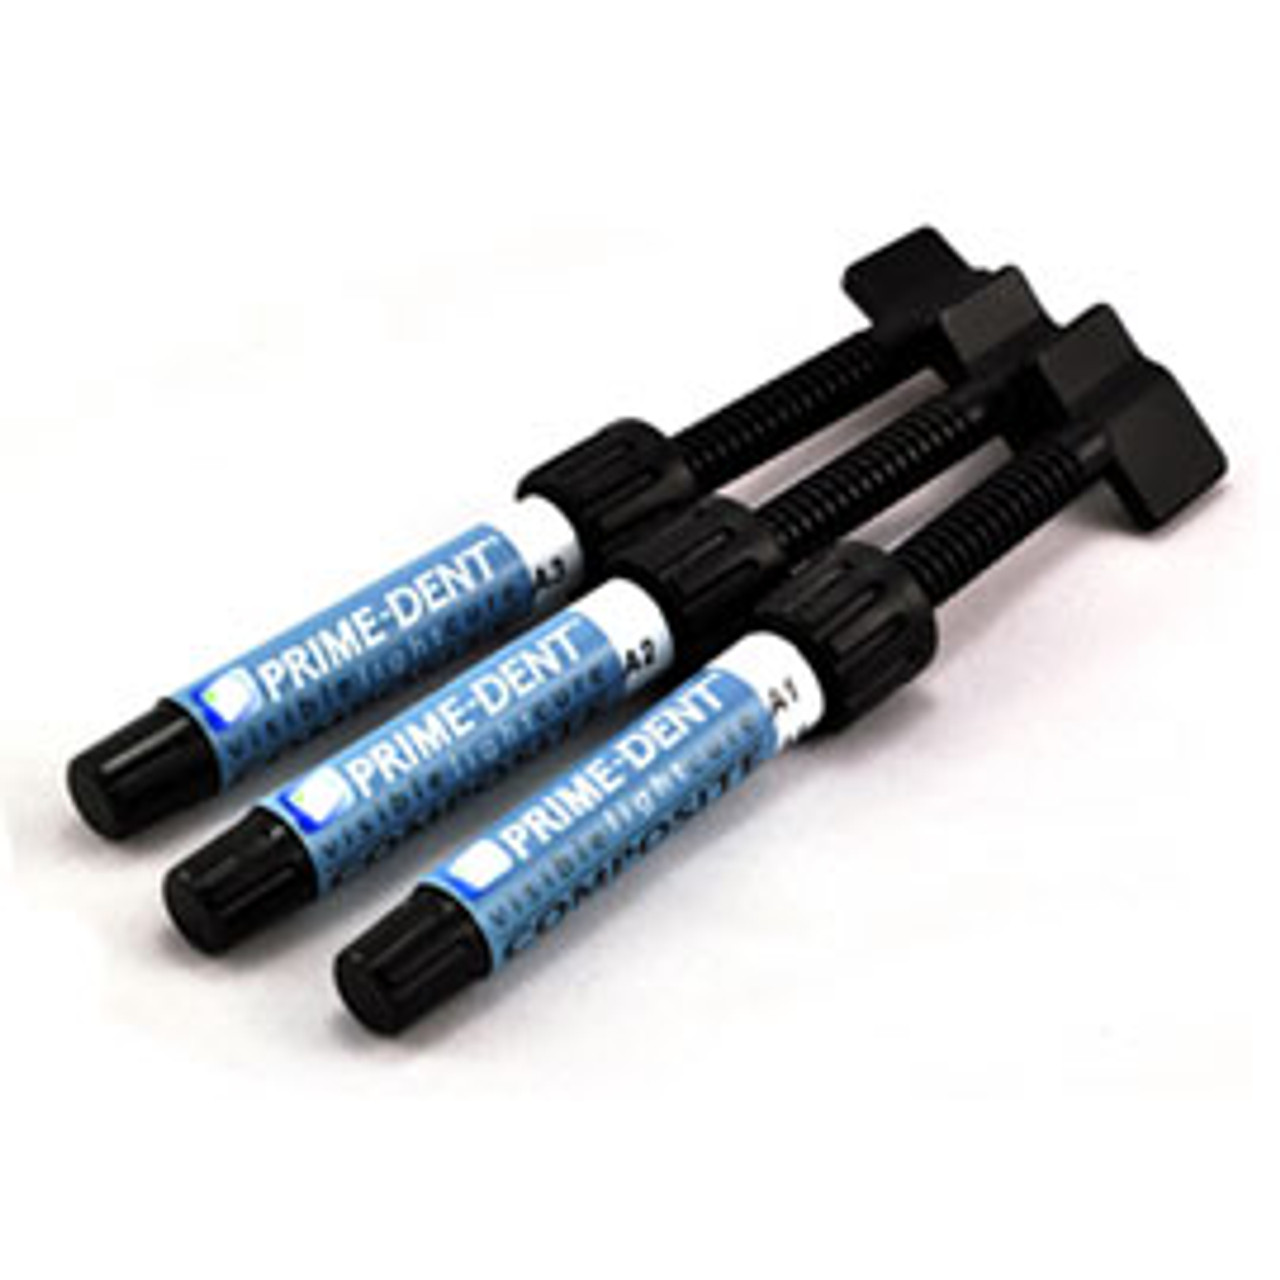 Prime-Dent VLC Hybrid Composite 4.5 g Syringe Refill [C1]